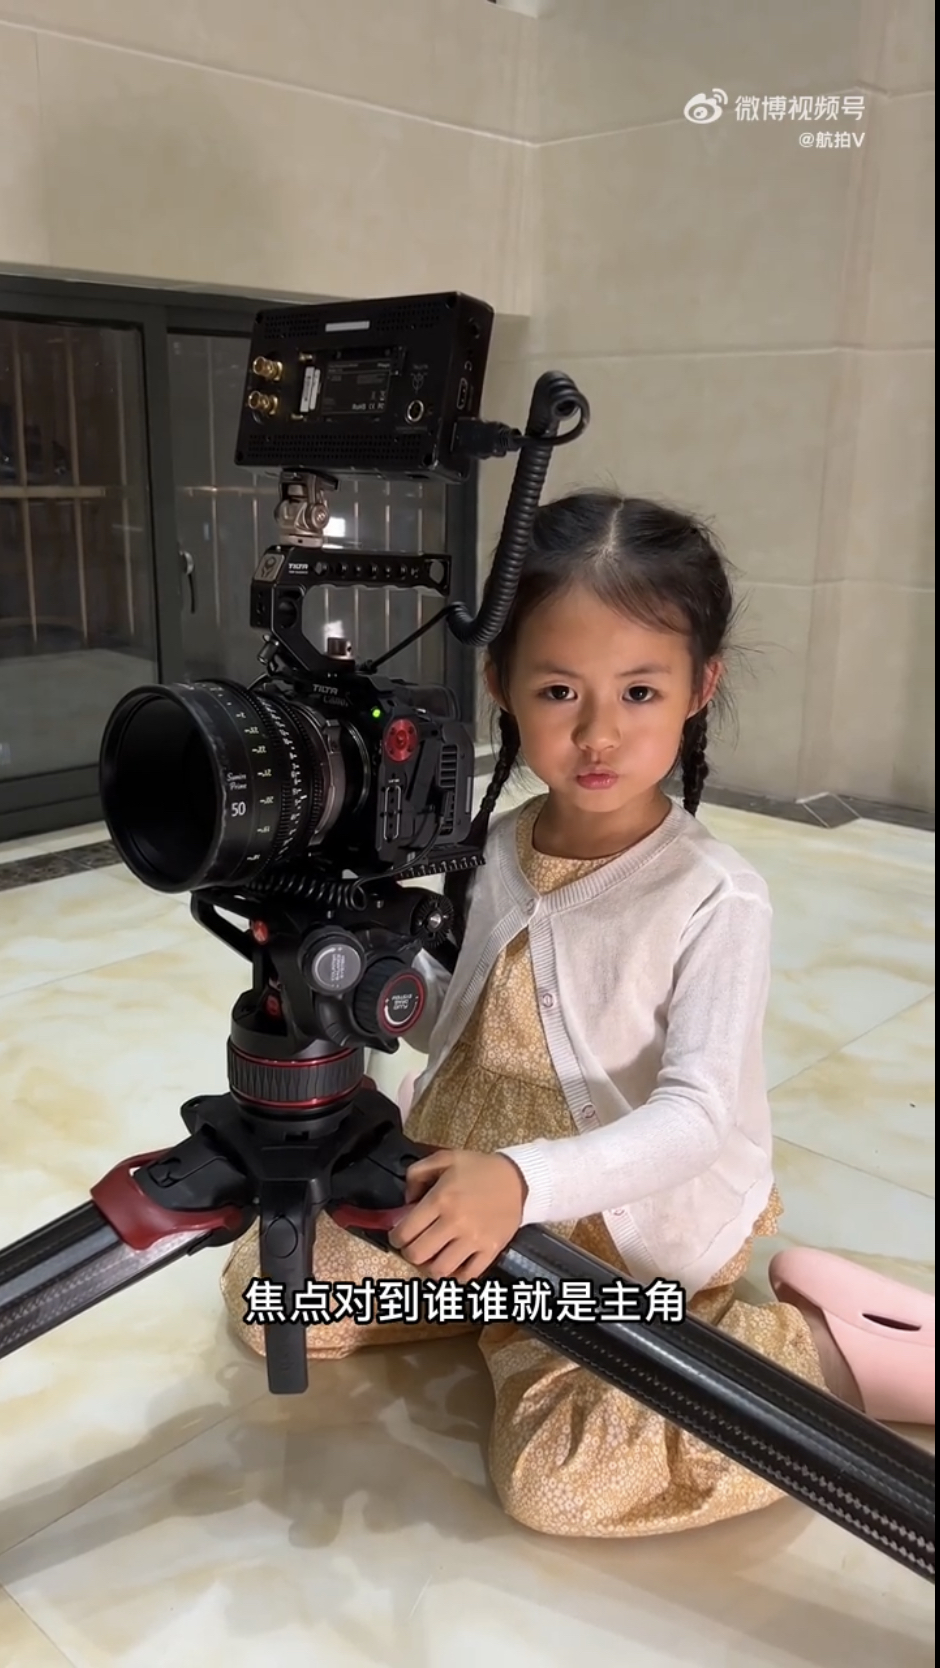 專業攝影師爸爸向萌萌傳授拍攝技巧。